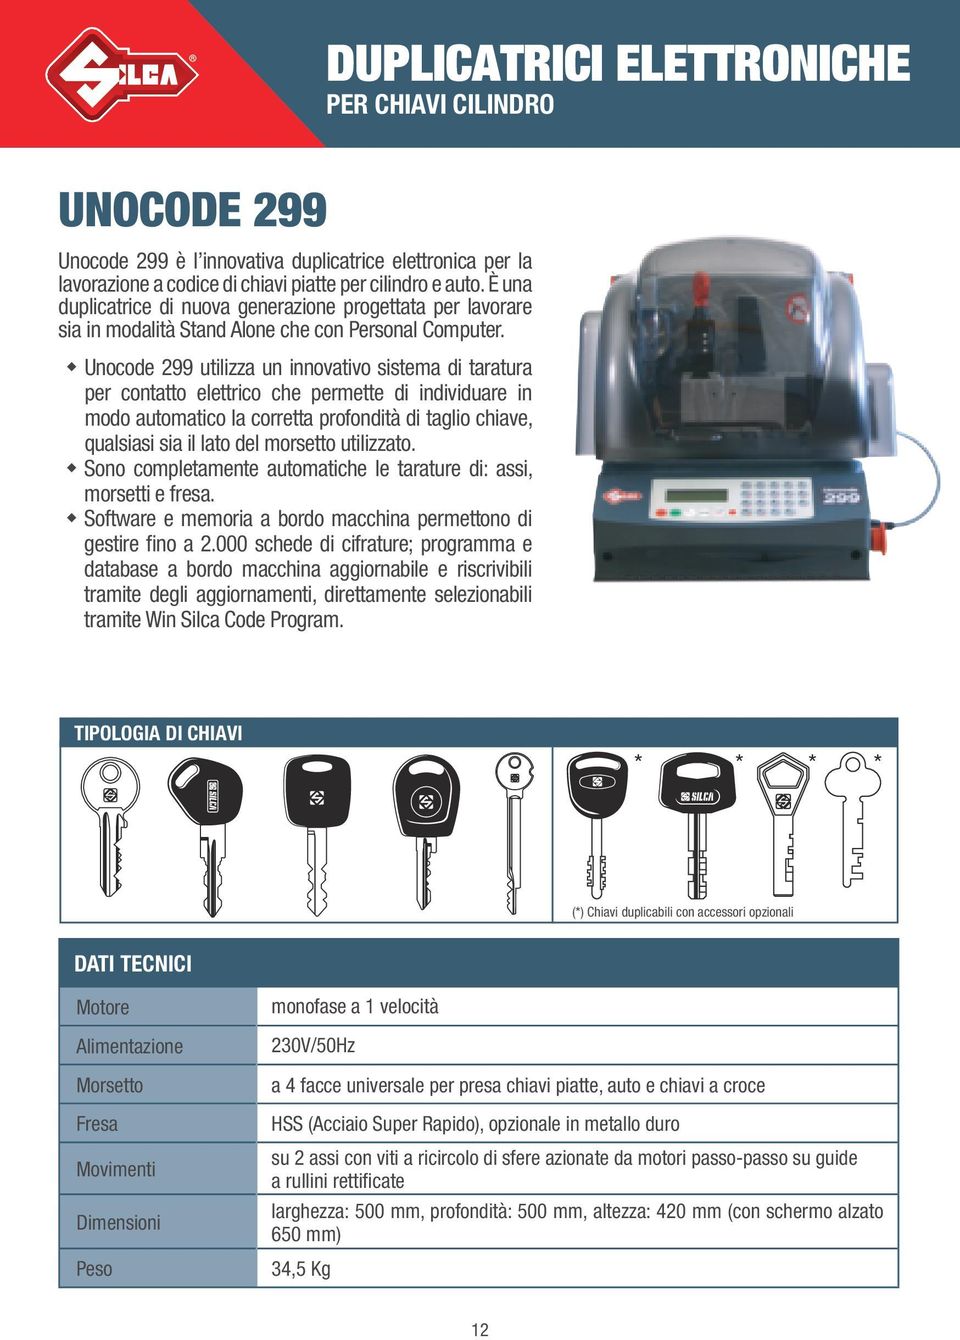 Unocode 299 utilizza un innovativo sistema di taratura per contatto elettrico che permette di individuare in modo automatico la corretta profondità di taglio chiave, qualsiasi sia il lato del